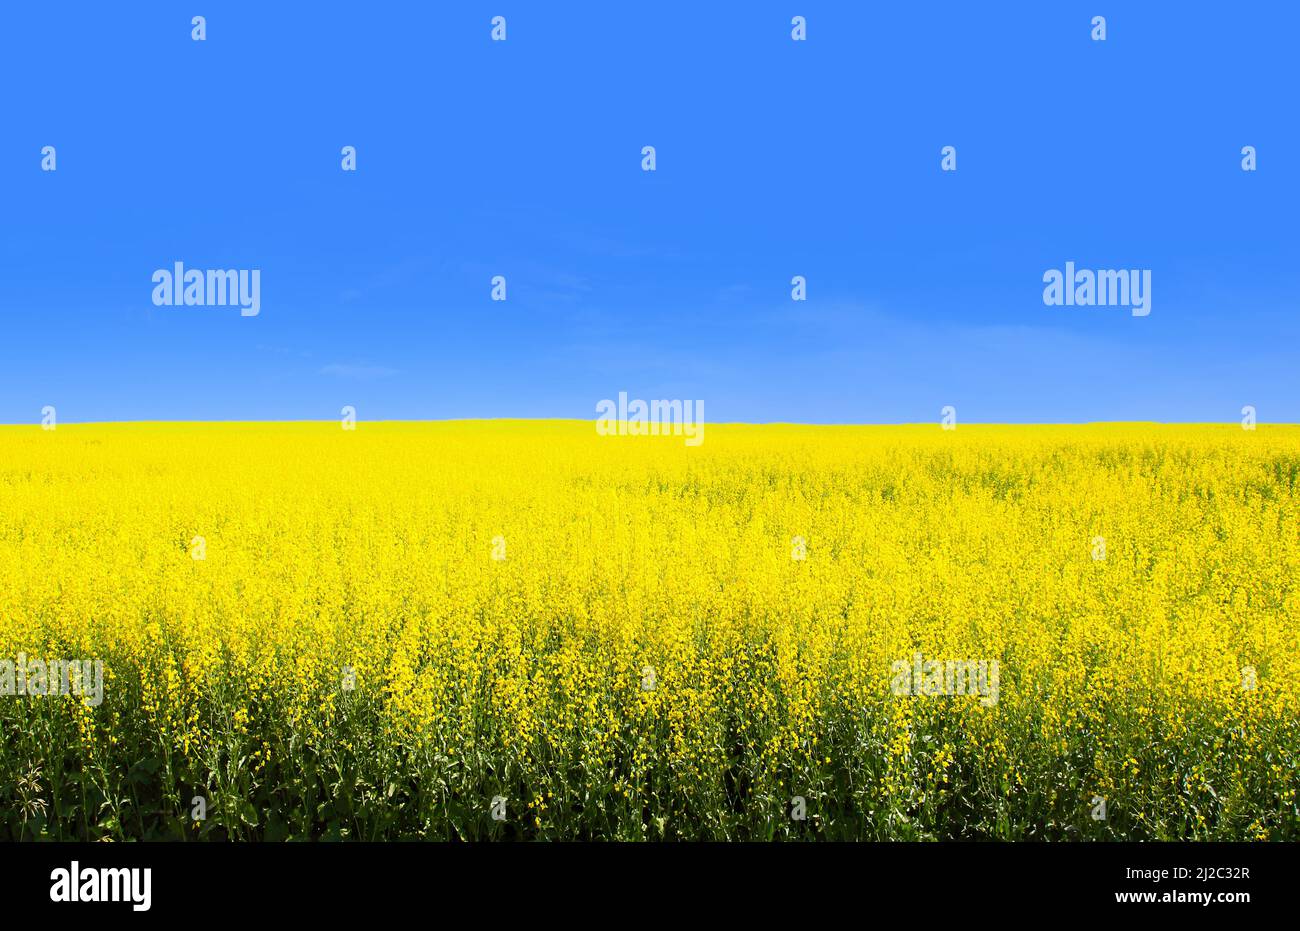 Gelbes Rapsfeld mit blauem Himmel zeigt die Flagge der Ukraine, des drittgrößten Exporteur der Ernte der Welt. Dieses Bild zeigt die Ukraine als eine der Th Stockfoto